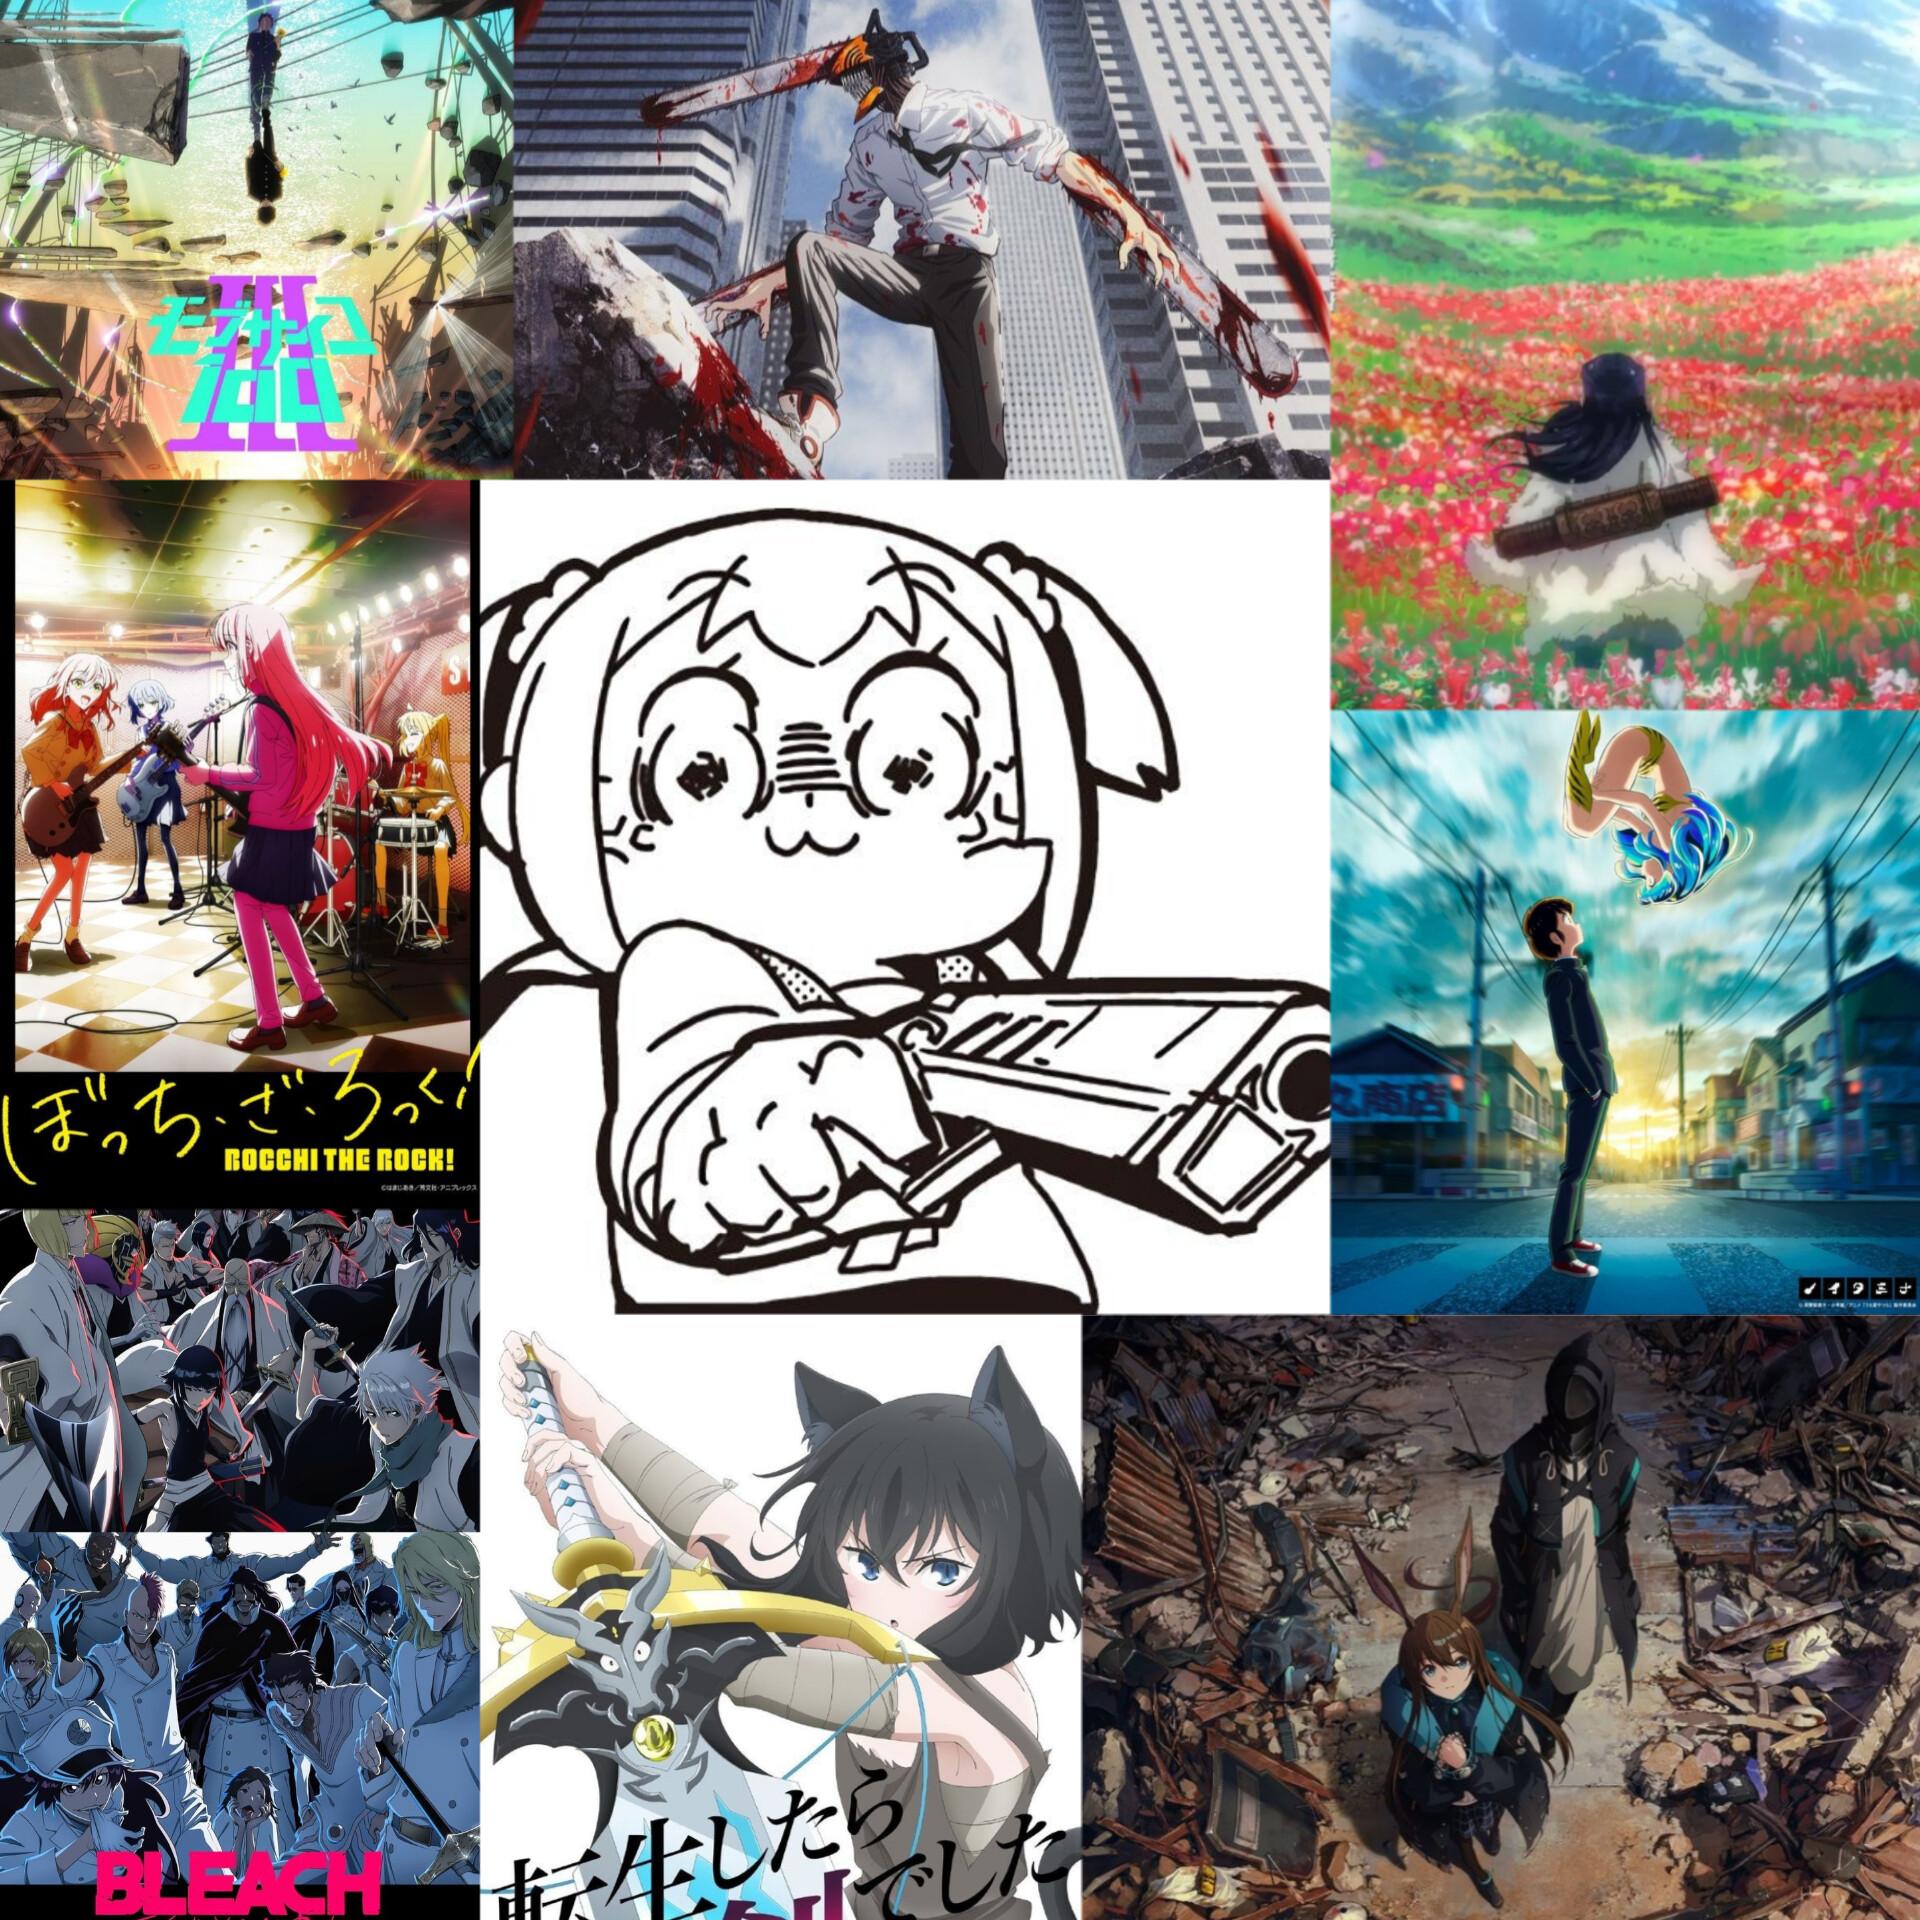 ESPECIAL: Os melhores Animes – Fim de temporada – inszzz